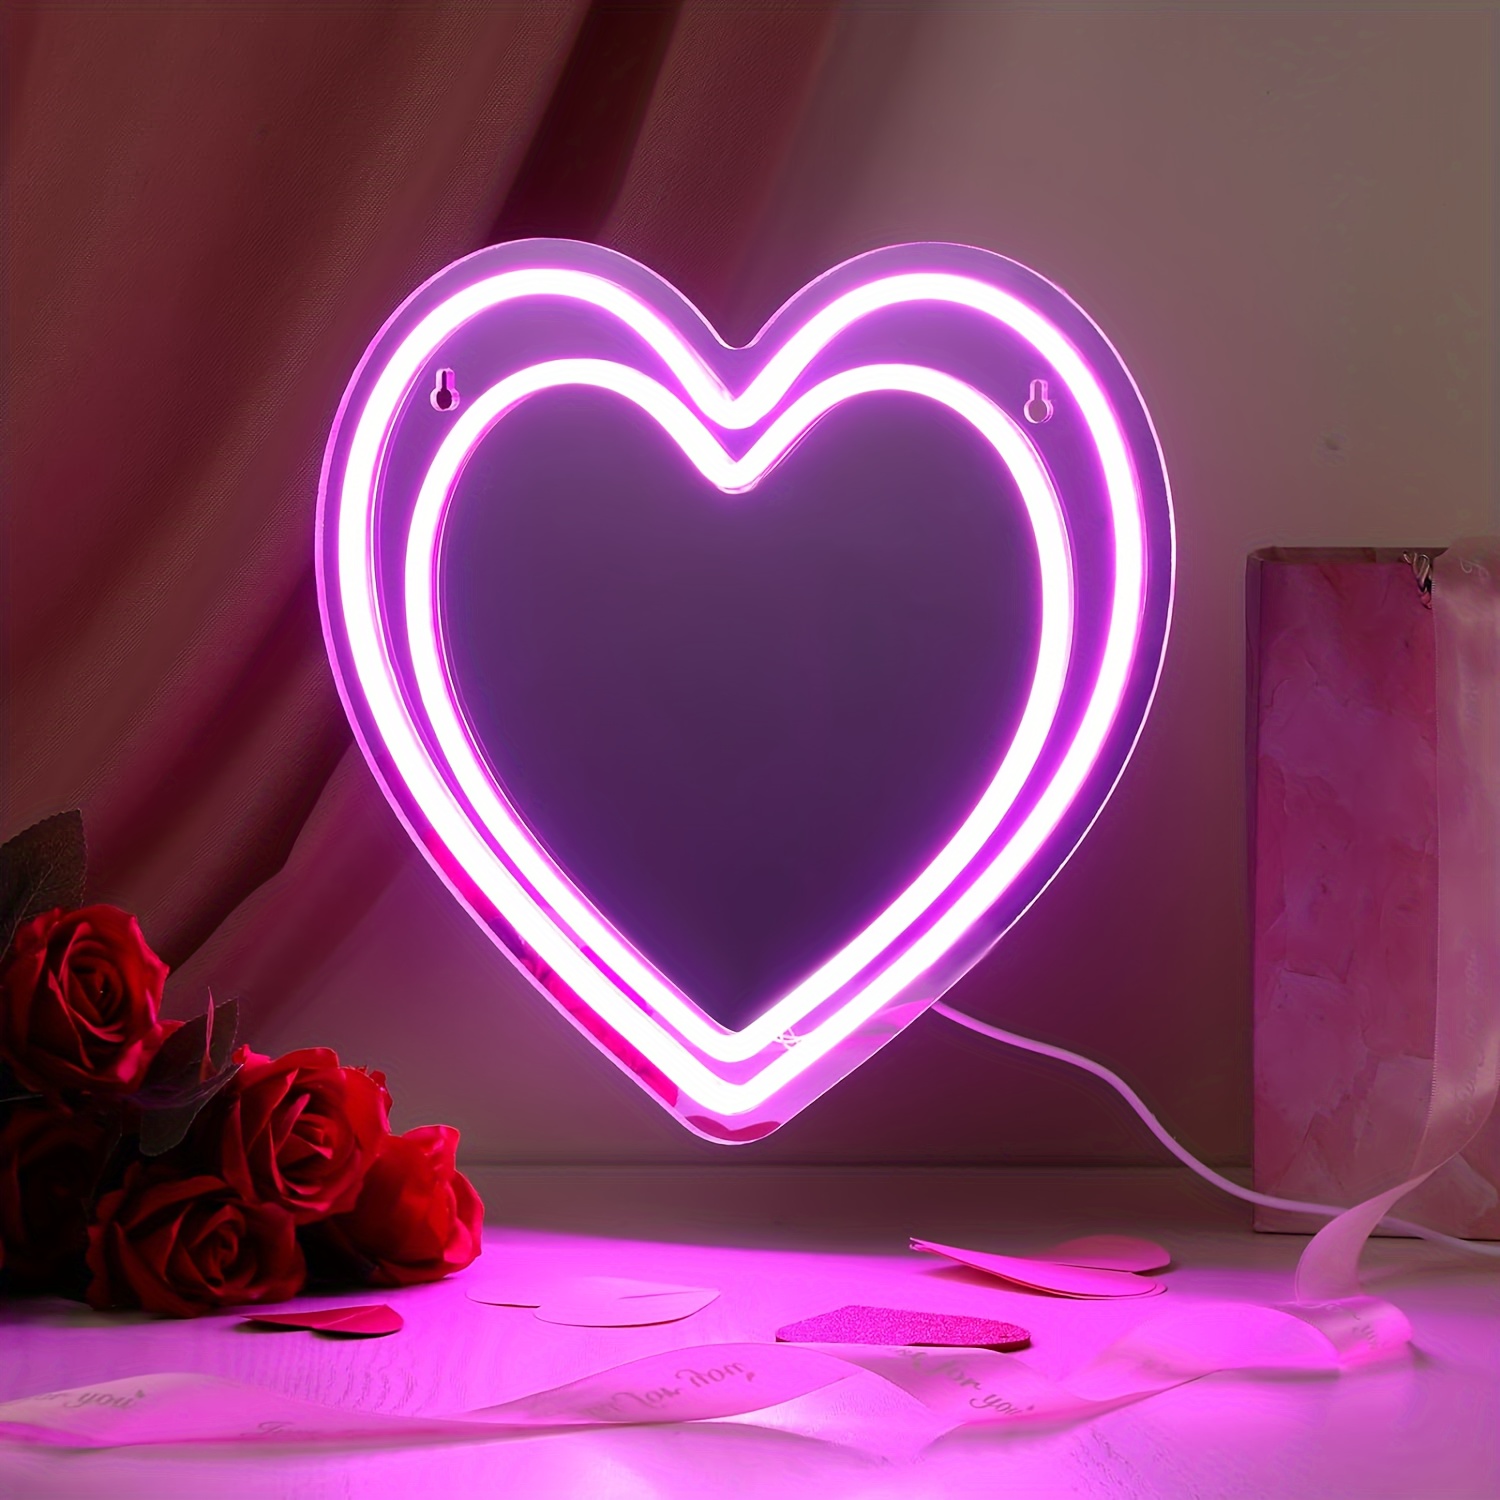 Lampe acrylique en forme de cœur, cœur et roses y sont gravés